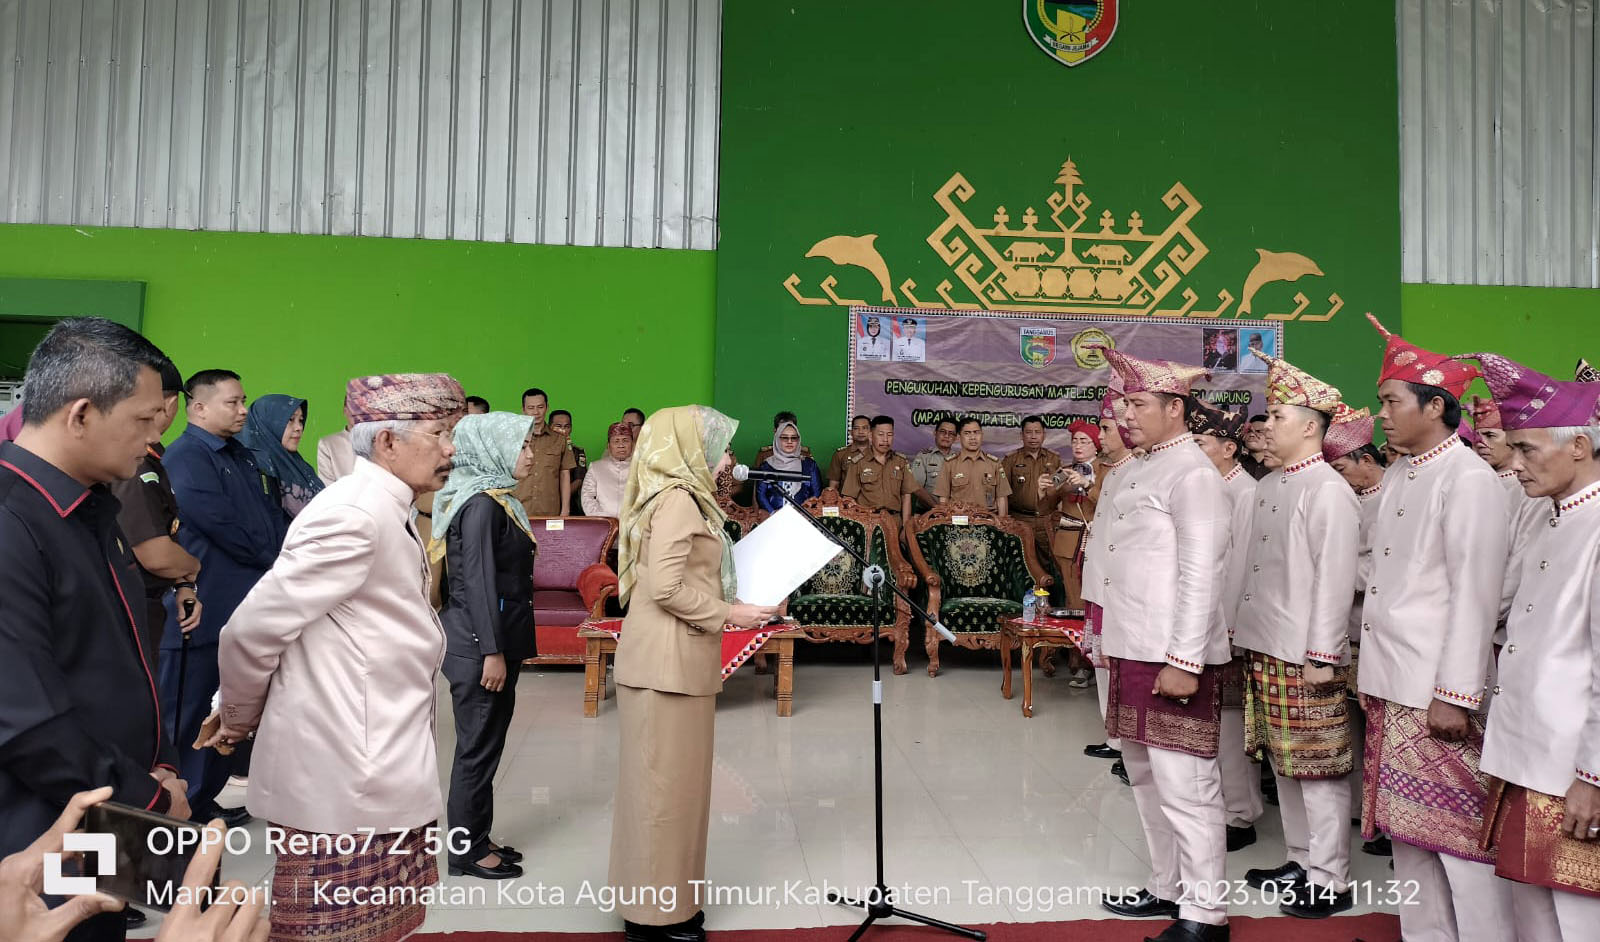 Bupati Dewi Handajani Mengukuhkan Kepengurusan MPAL Tanggamus 2022-2026